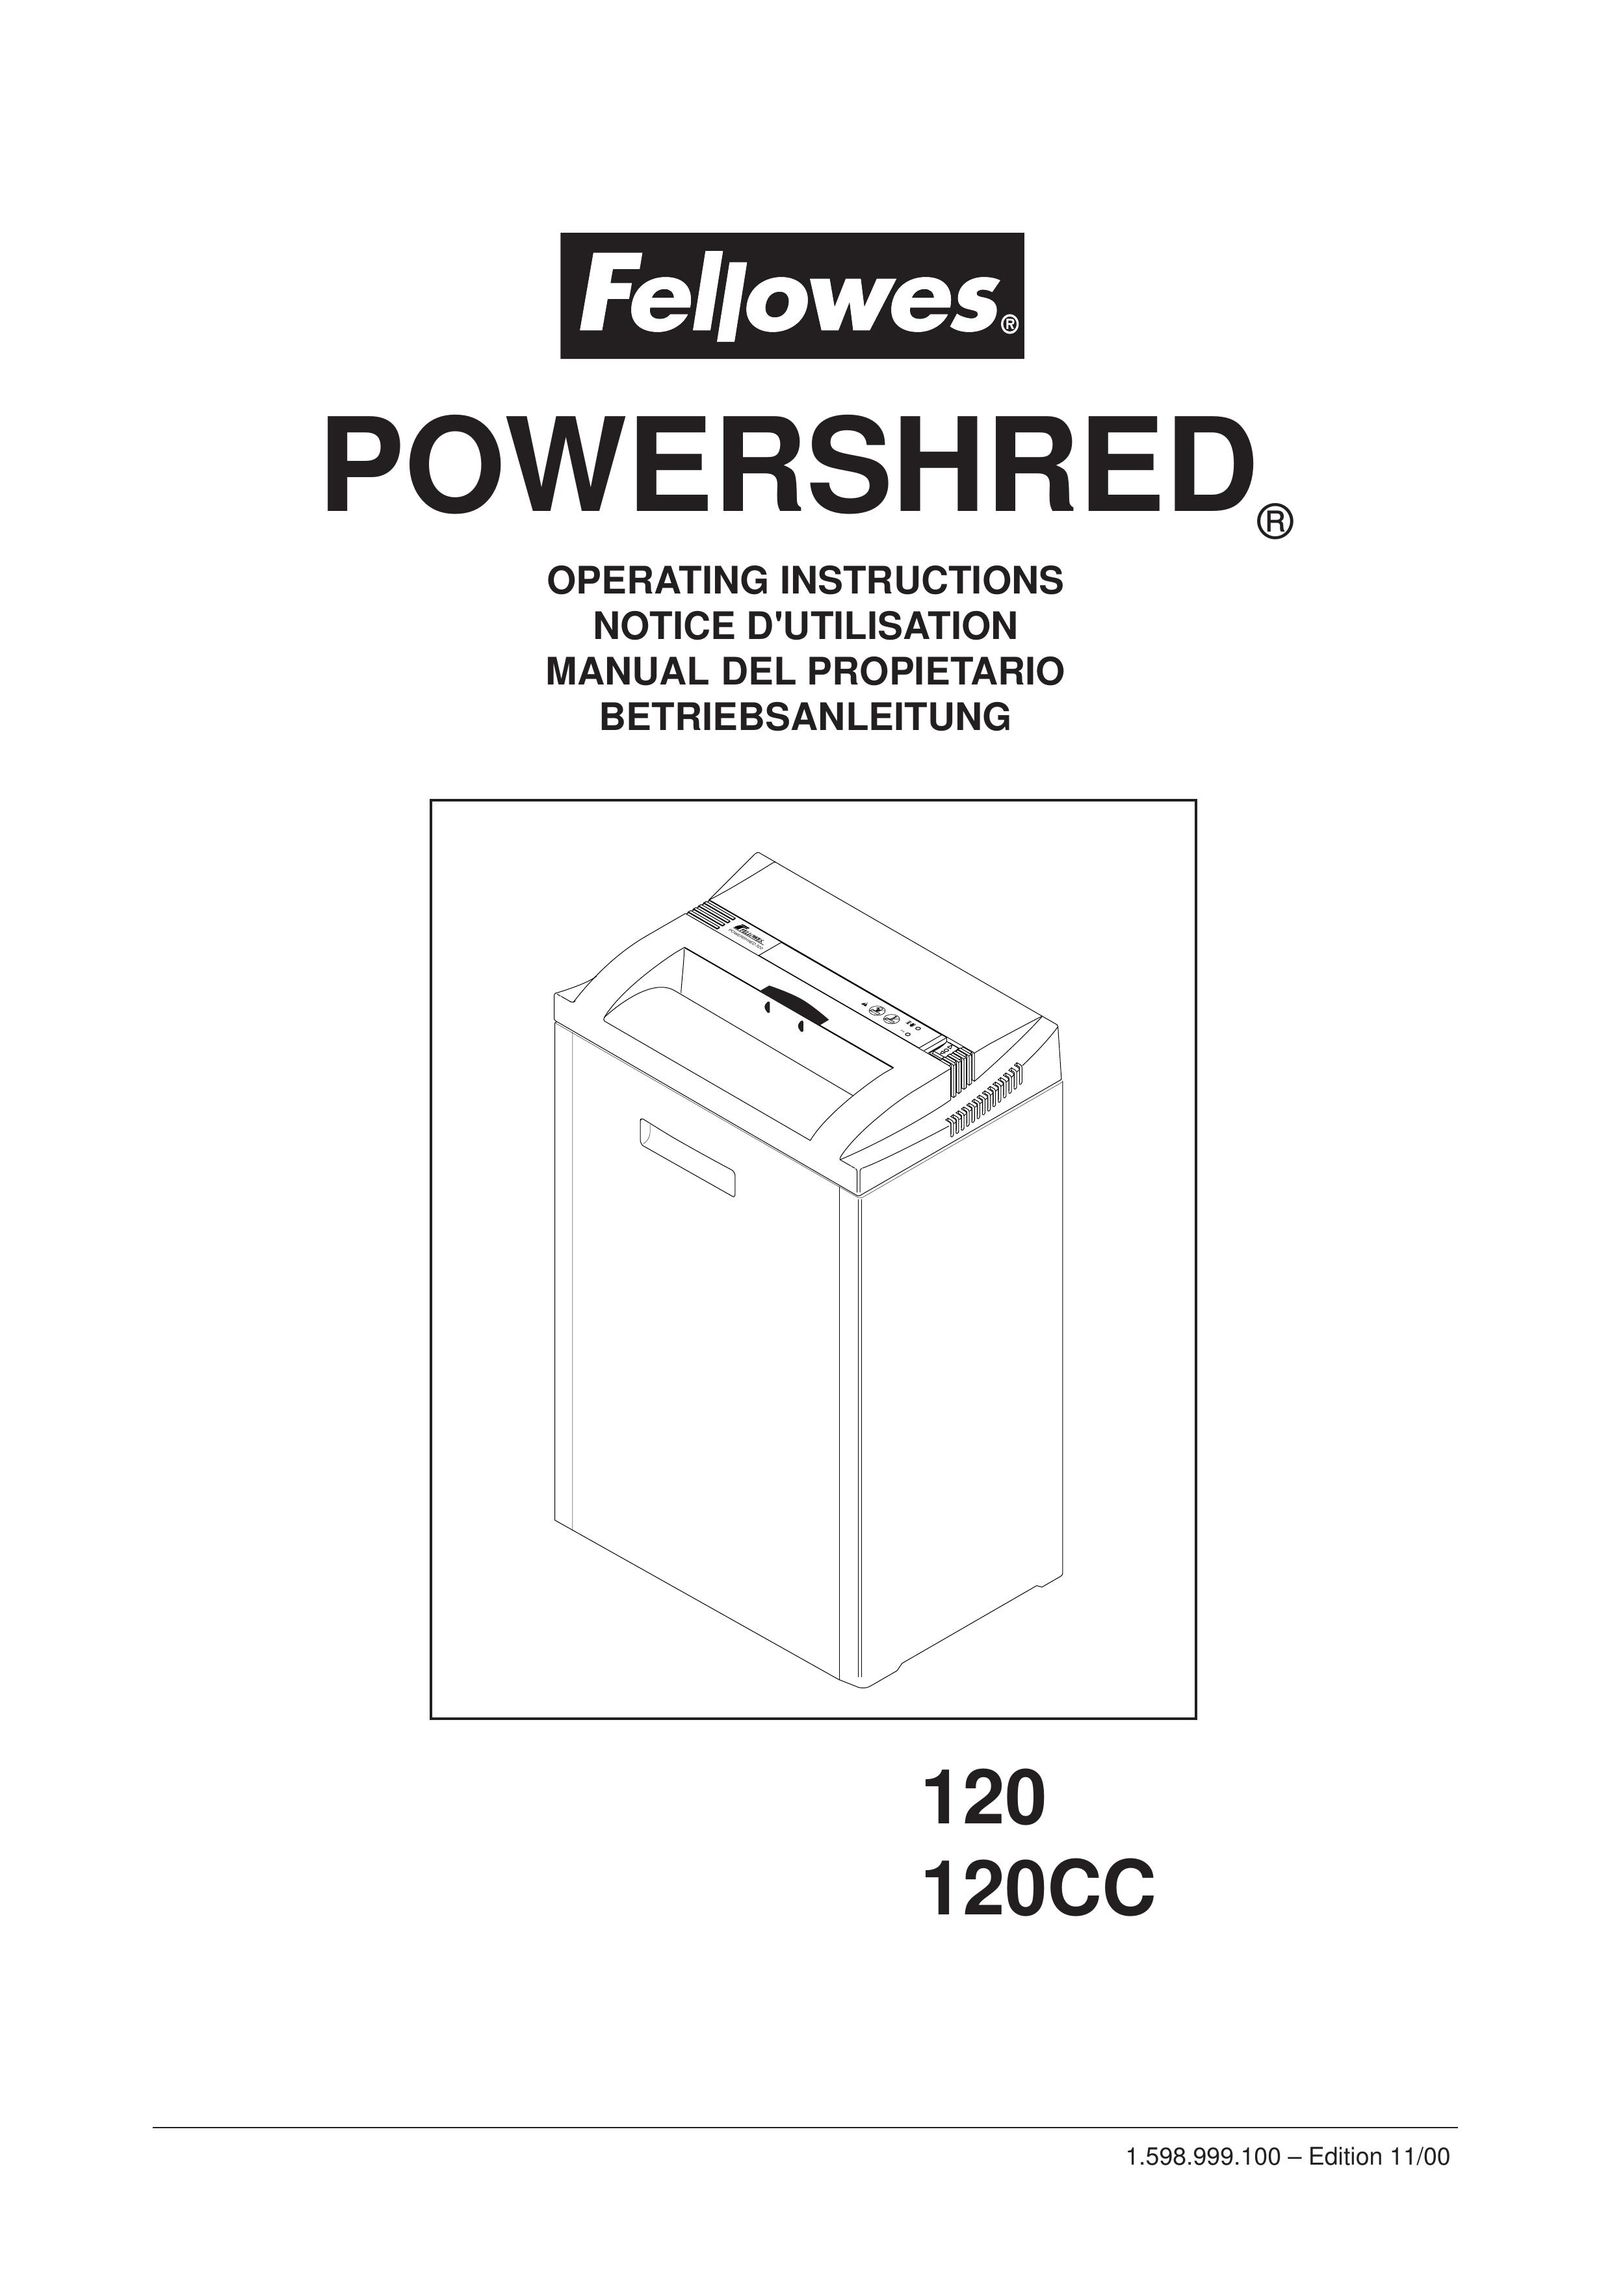 Fellowes 120CC Paper Shredder User Manual